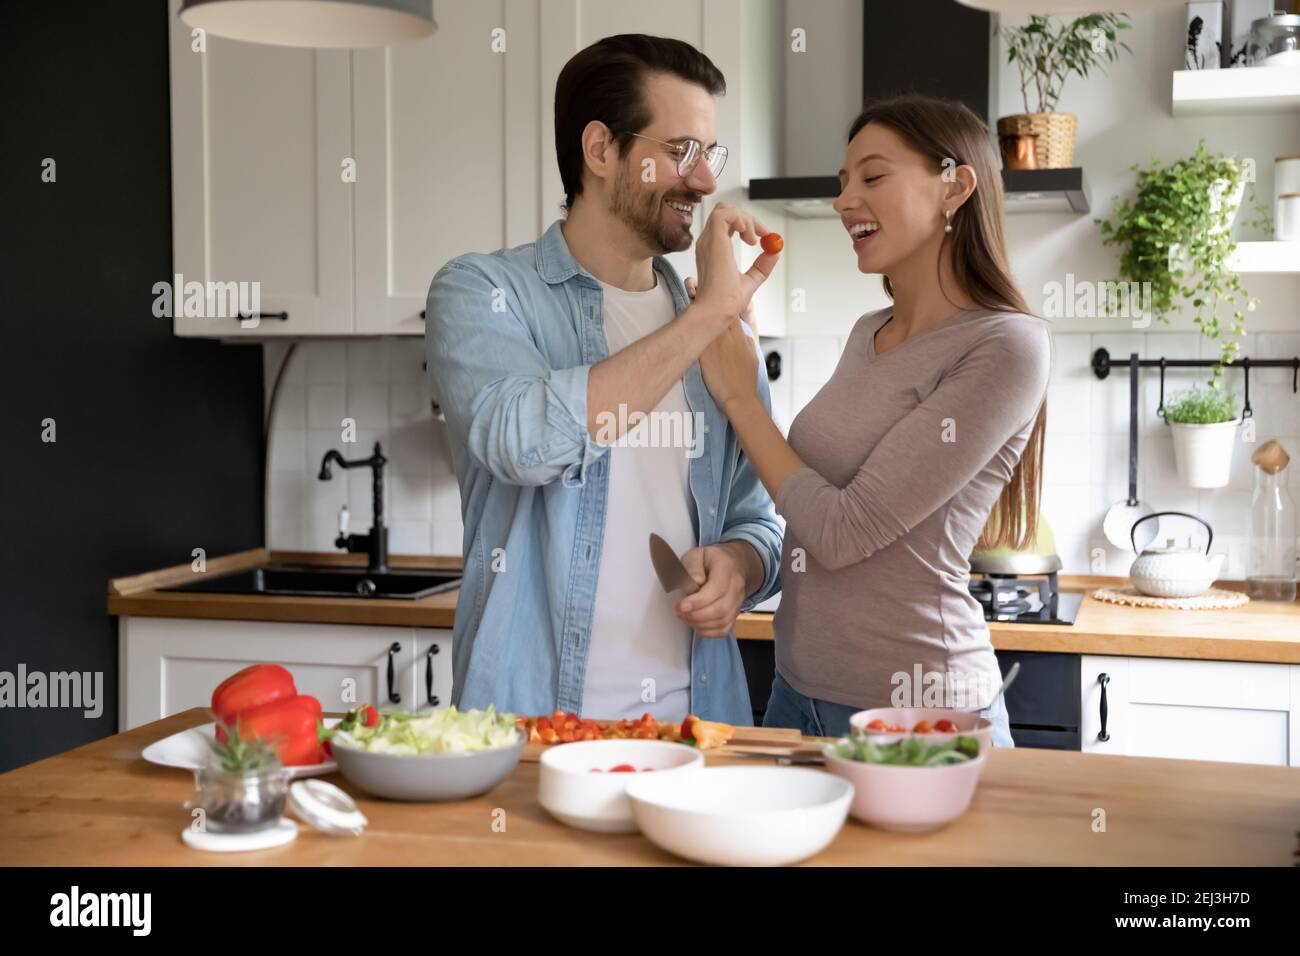 Überglücklich Paar haben Spaß Kochen gesunde Ernährung Salat Stockfoto